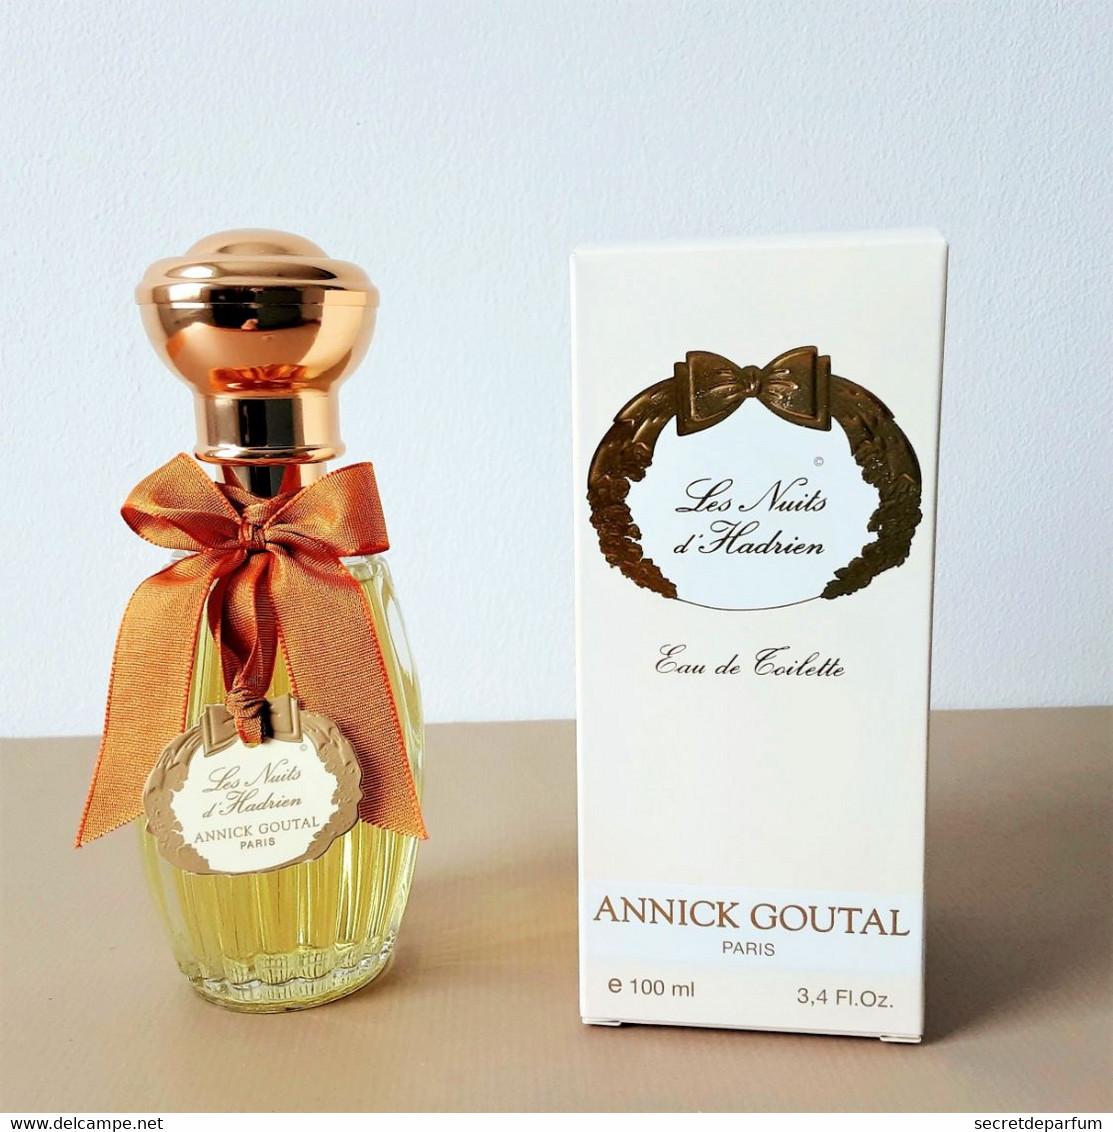 FLACON De Parfum Neuf   ANNICK GOUTAL EDT    LES NUITS D'HADRIEN    FLACON TRANSPARENT  100 Ml + Boite - Femme